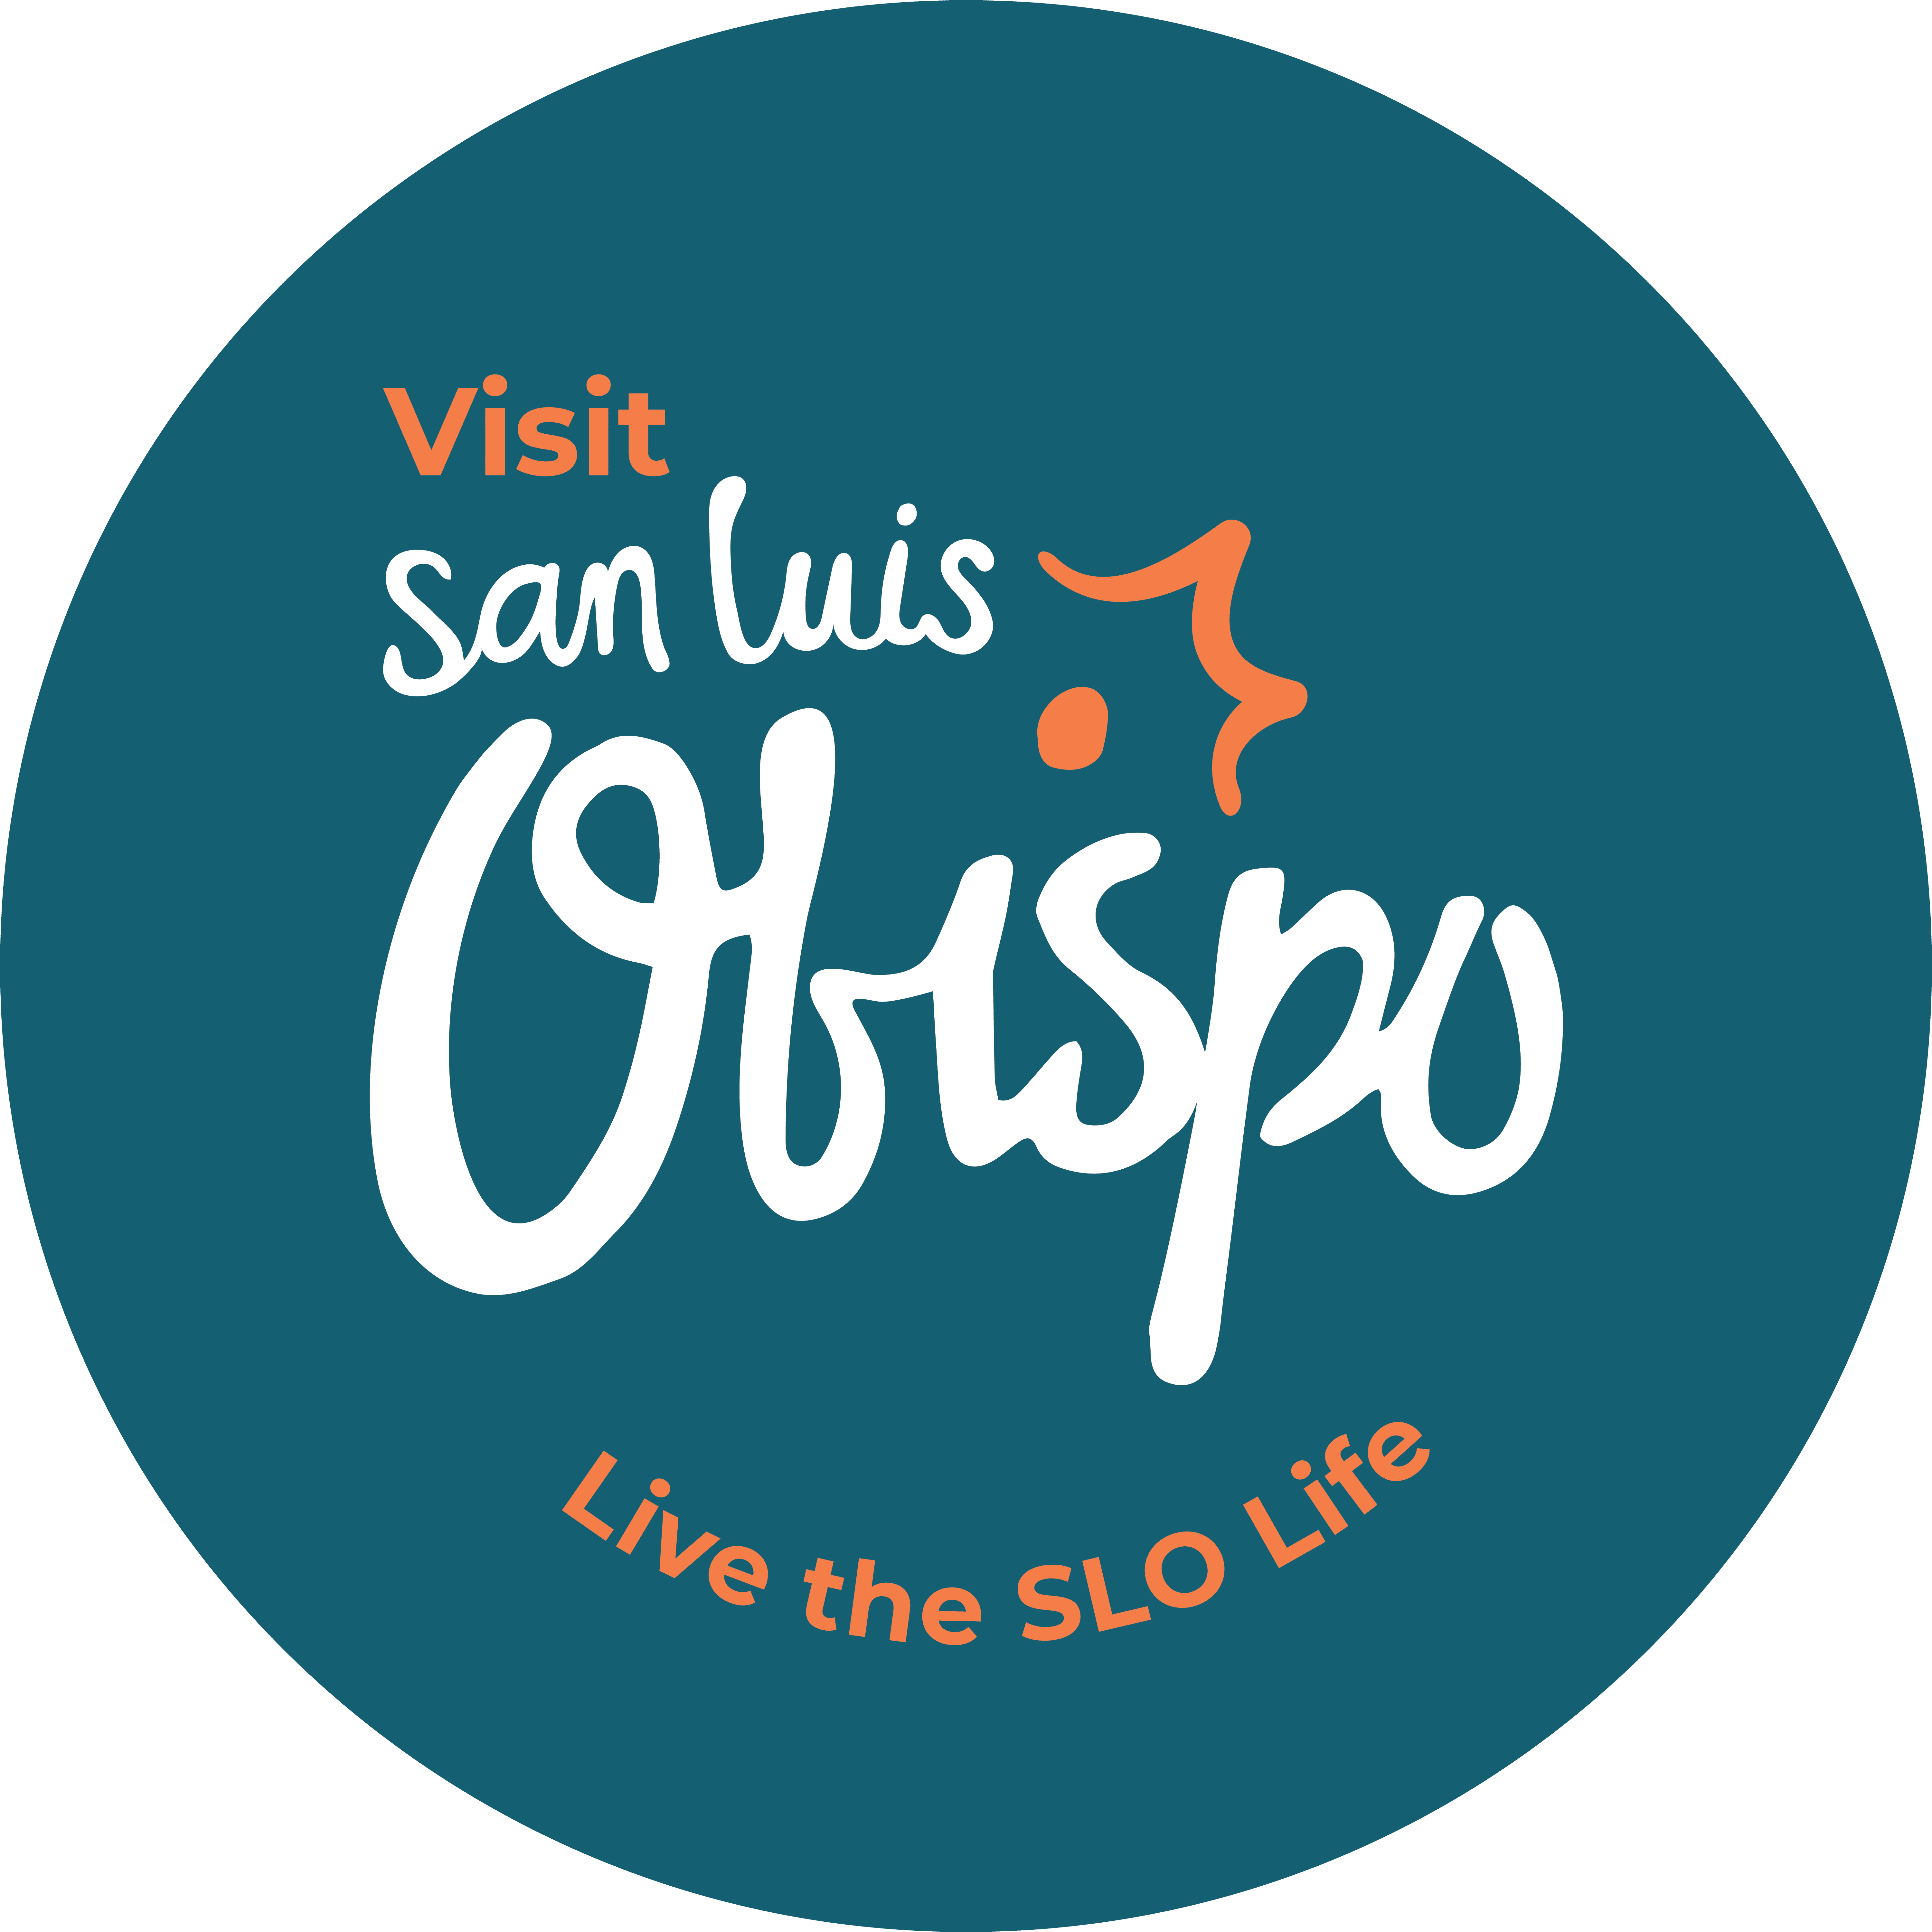 Visit San Luis Obispo